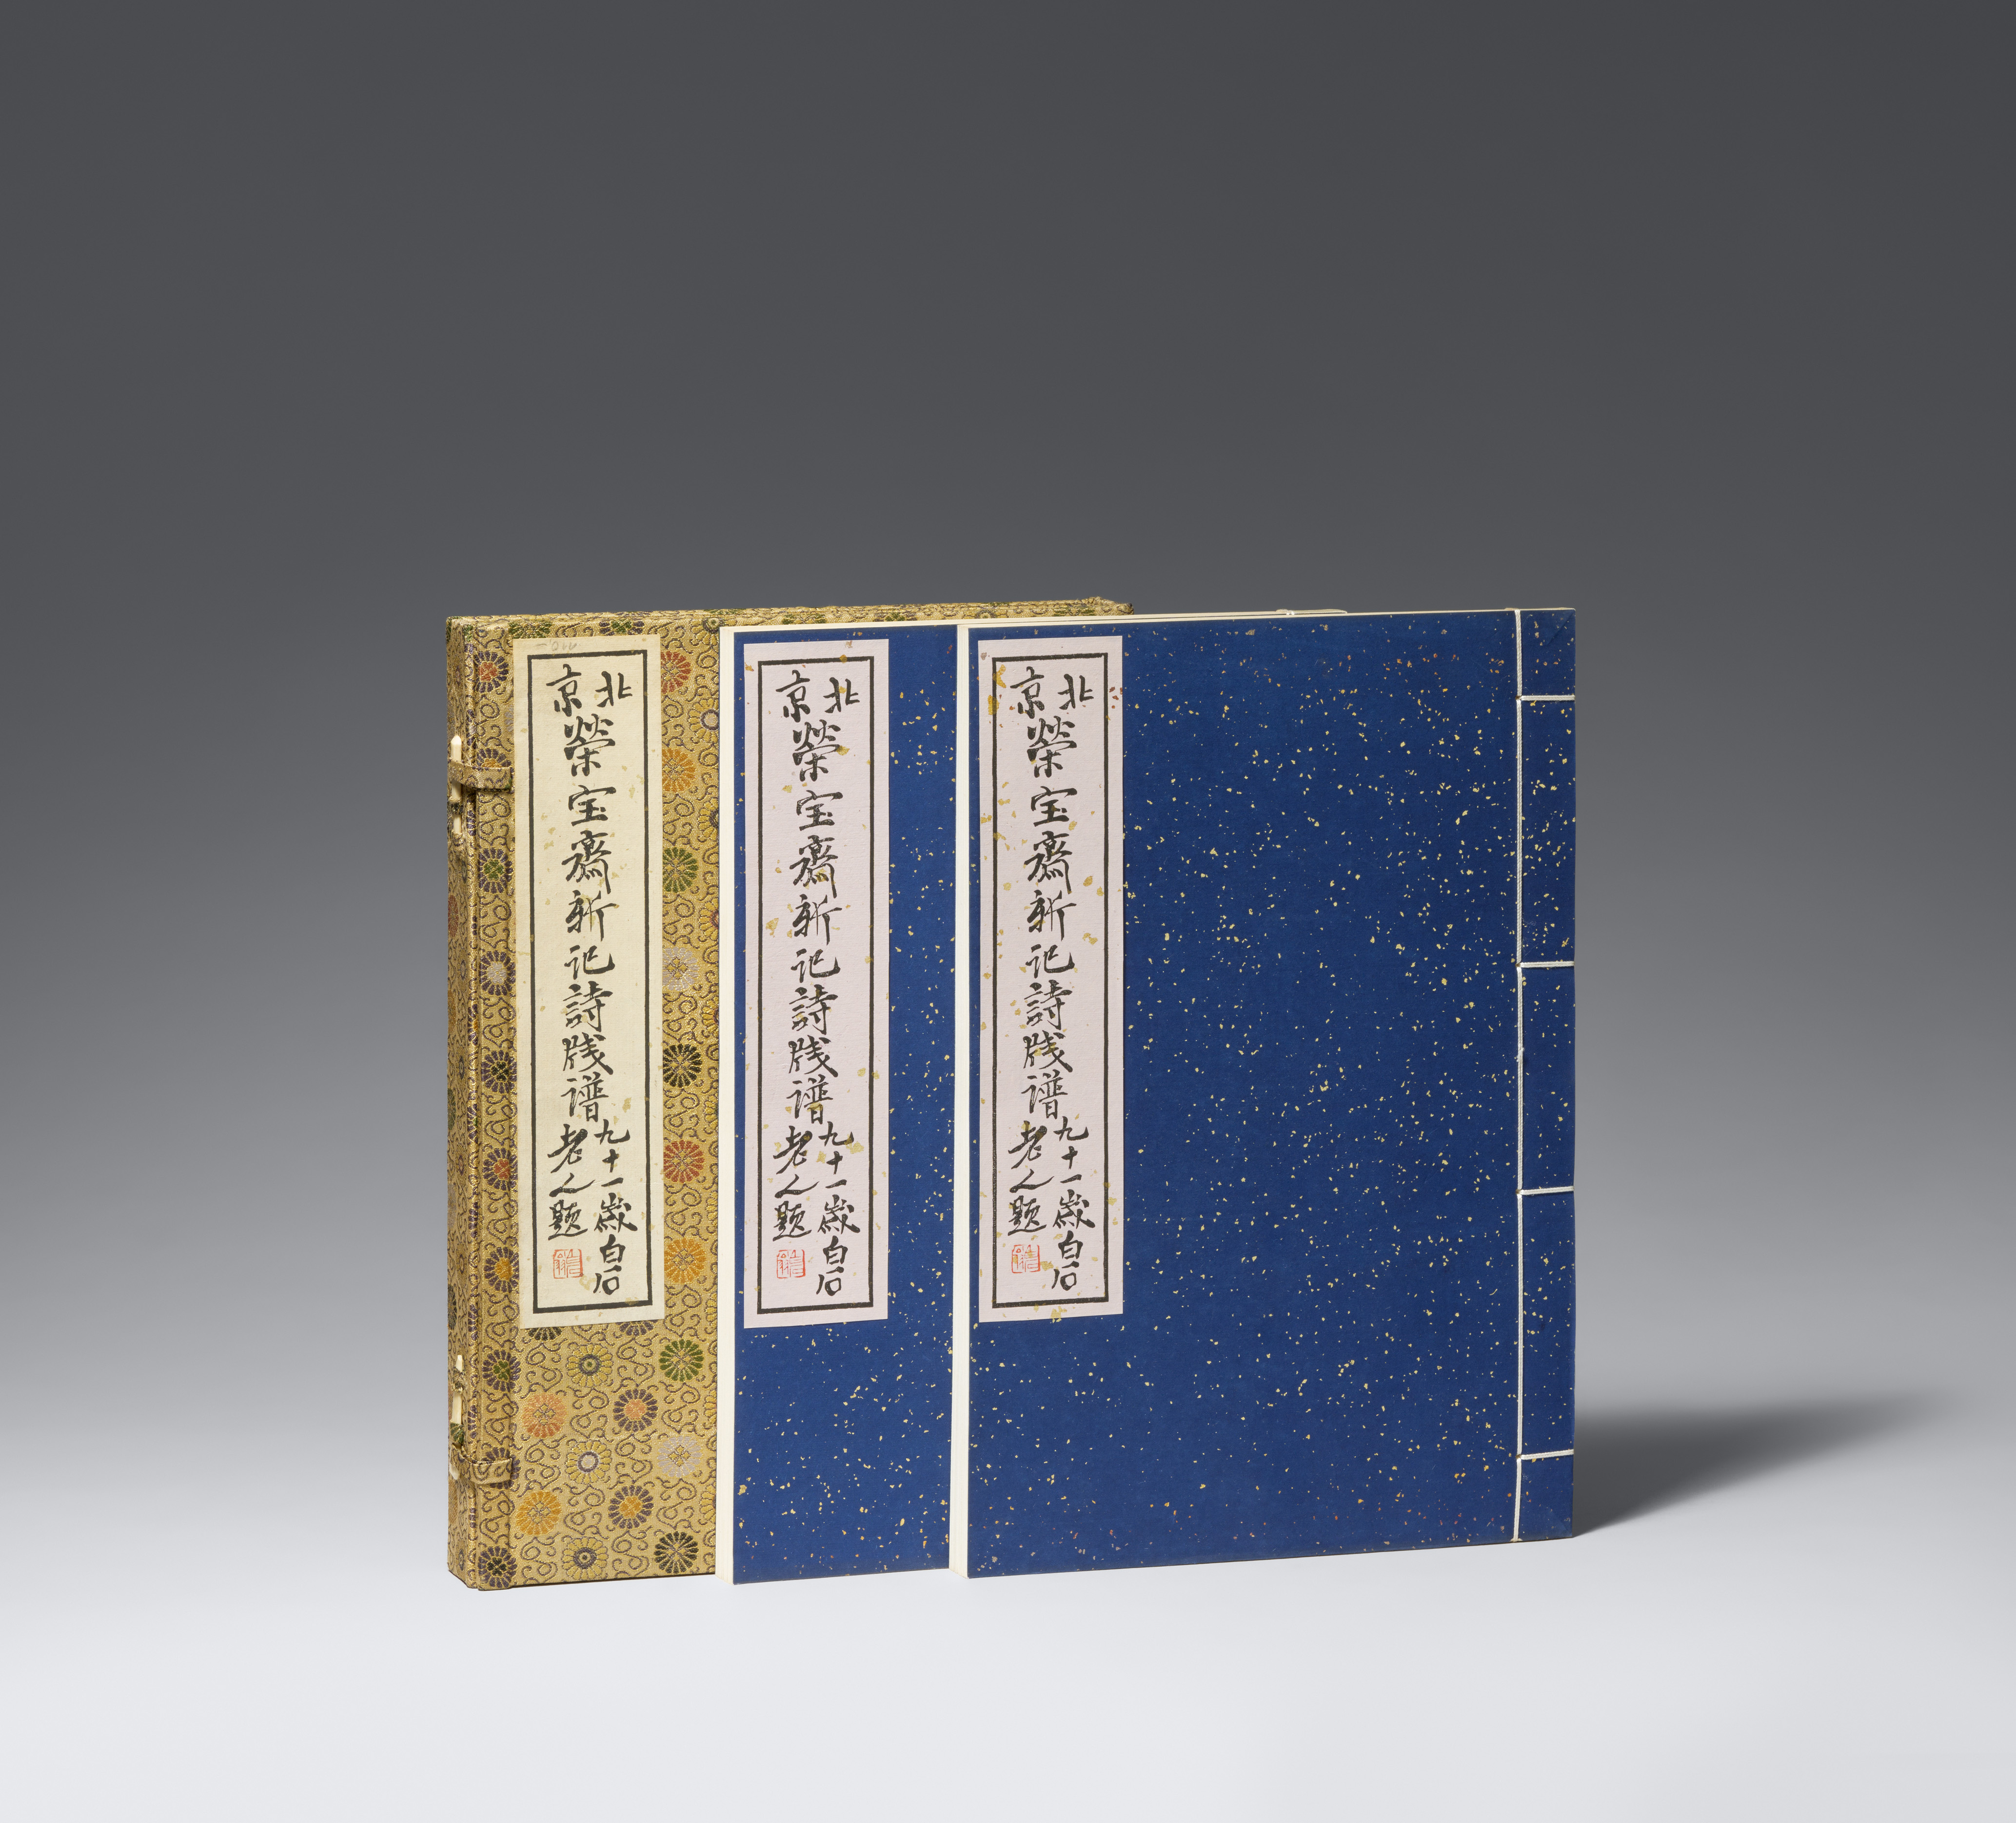 After Qi Baishi - Two volumes titled "Beijing Rongbaozhai xin jishi jianpu.